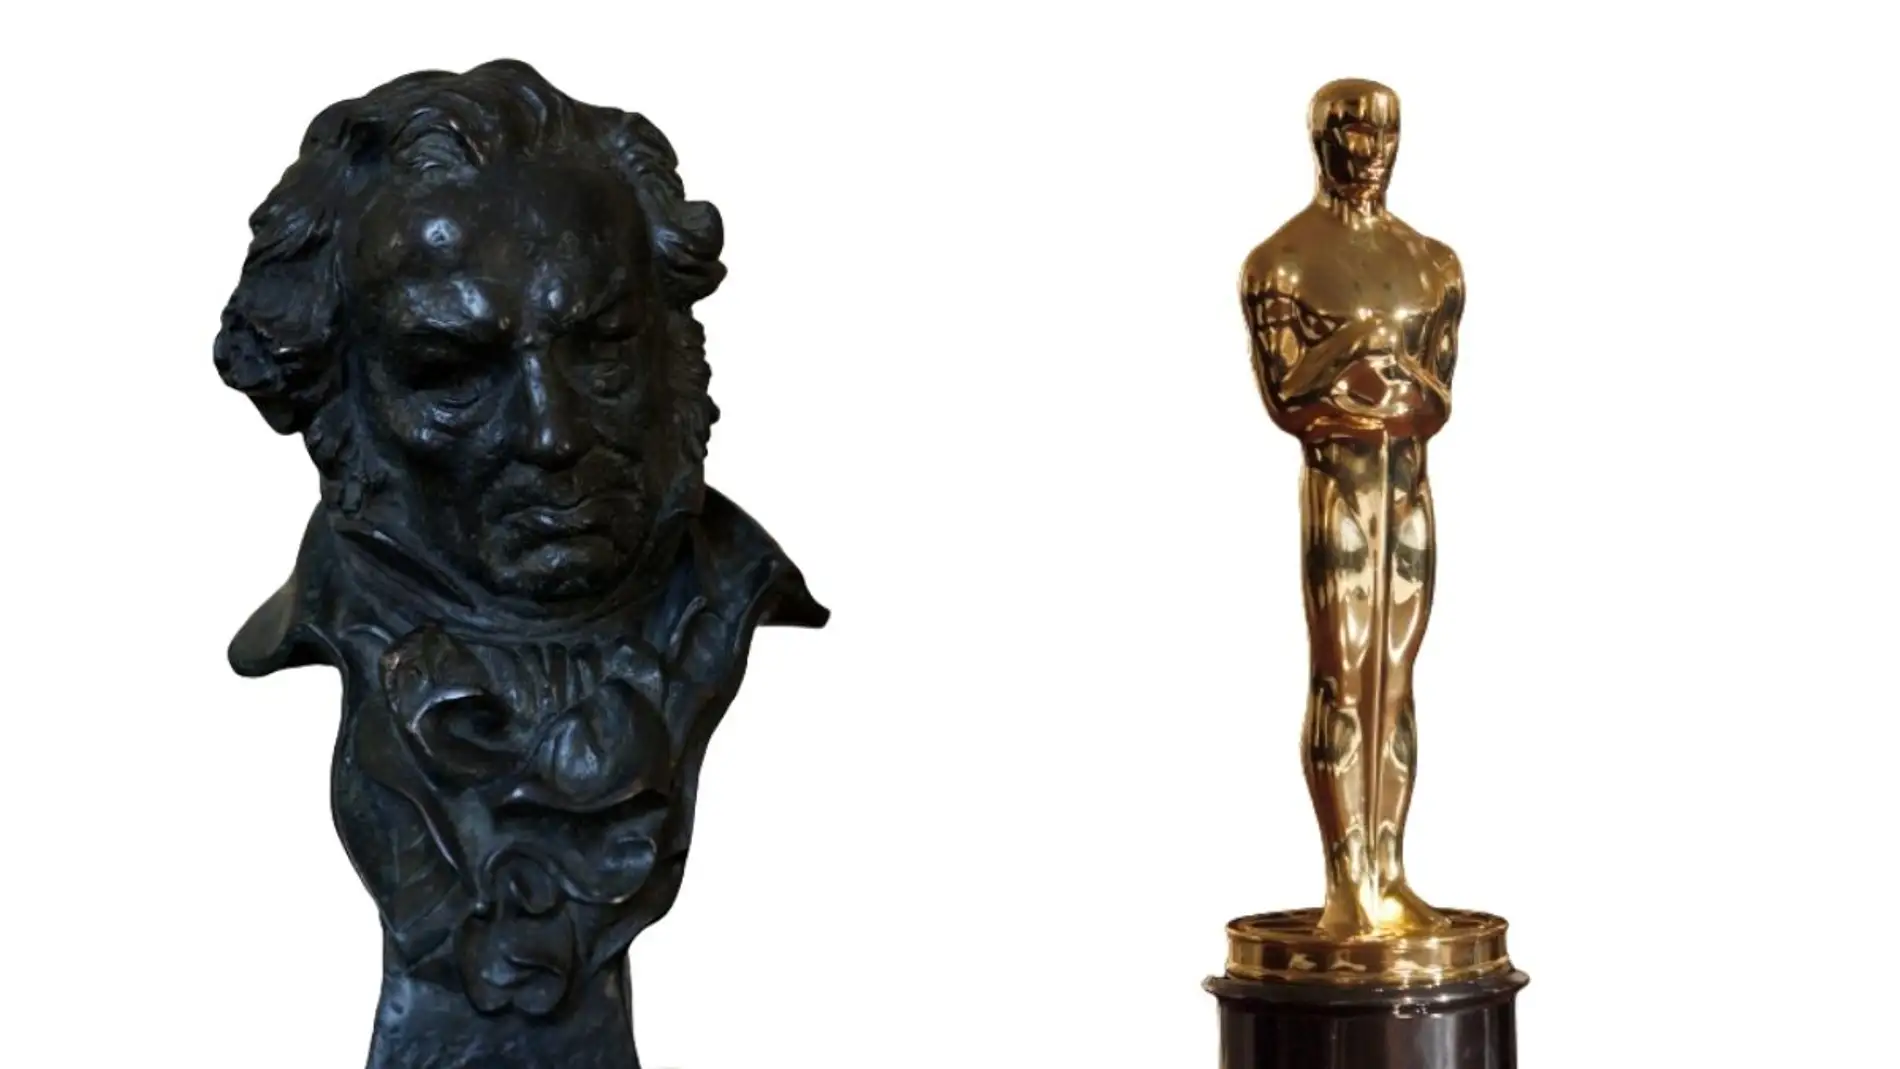 28 ° Premios Goya 24 ° Premios Goya España, premio, película, premio,  artefacto png